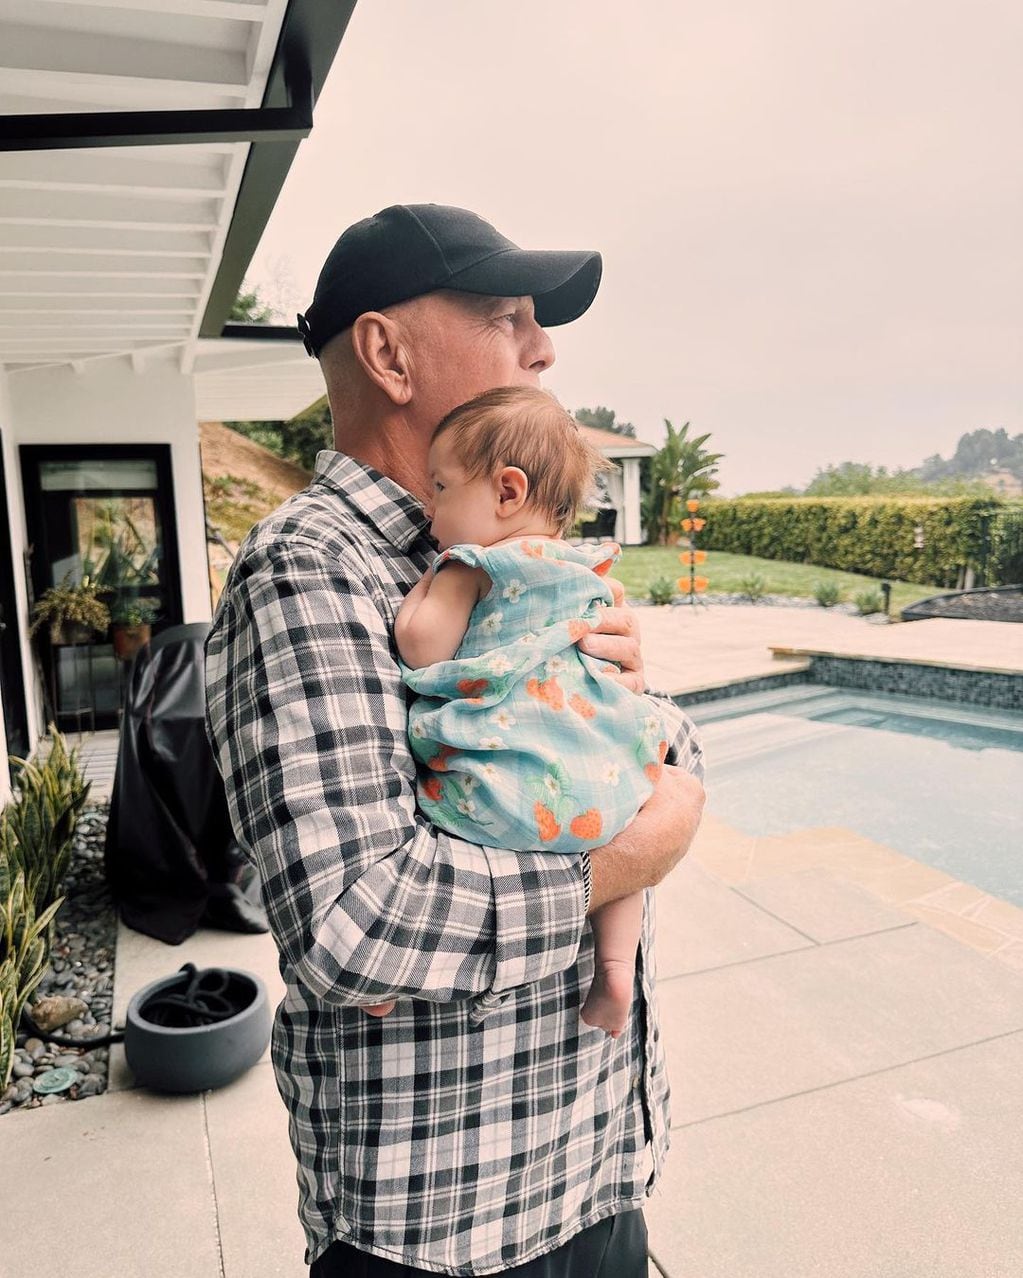 Las emotivas fotos de Bruce Willis junto a su hija mayor Rumer y su primera nieta